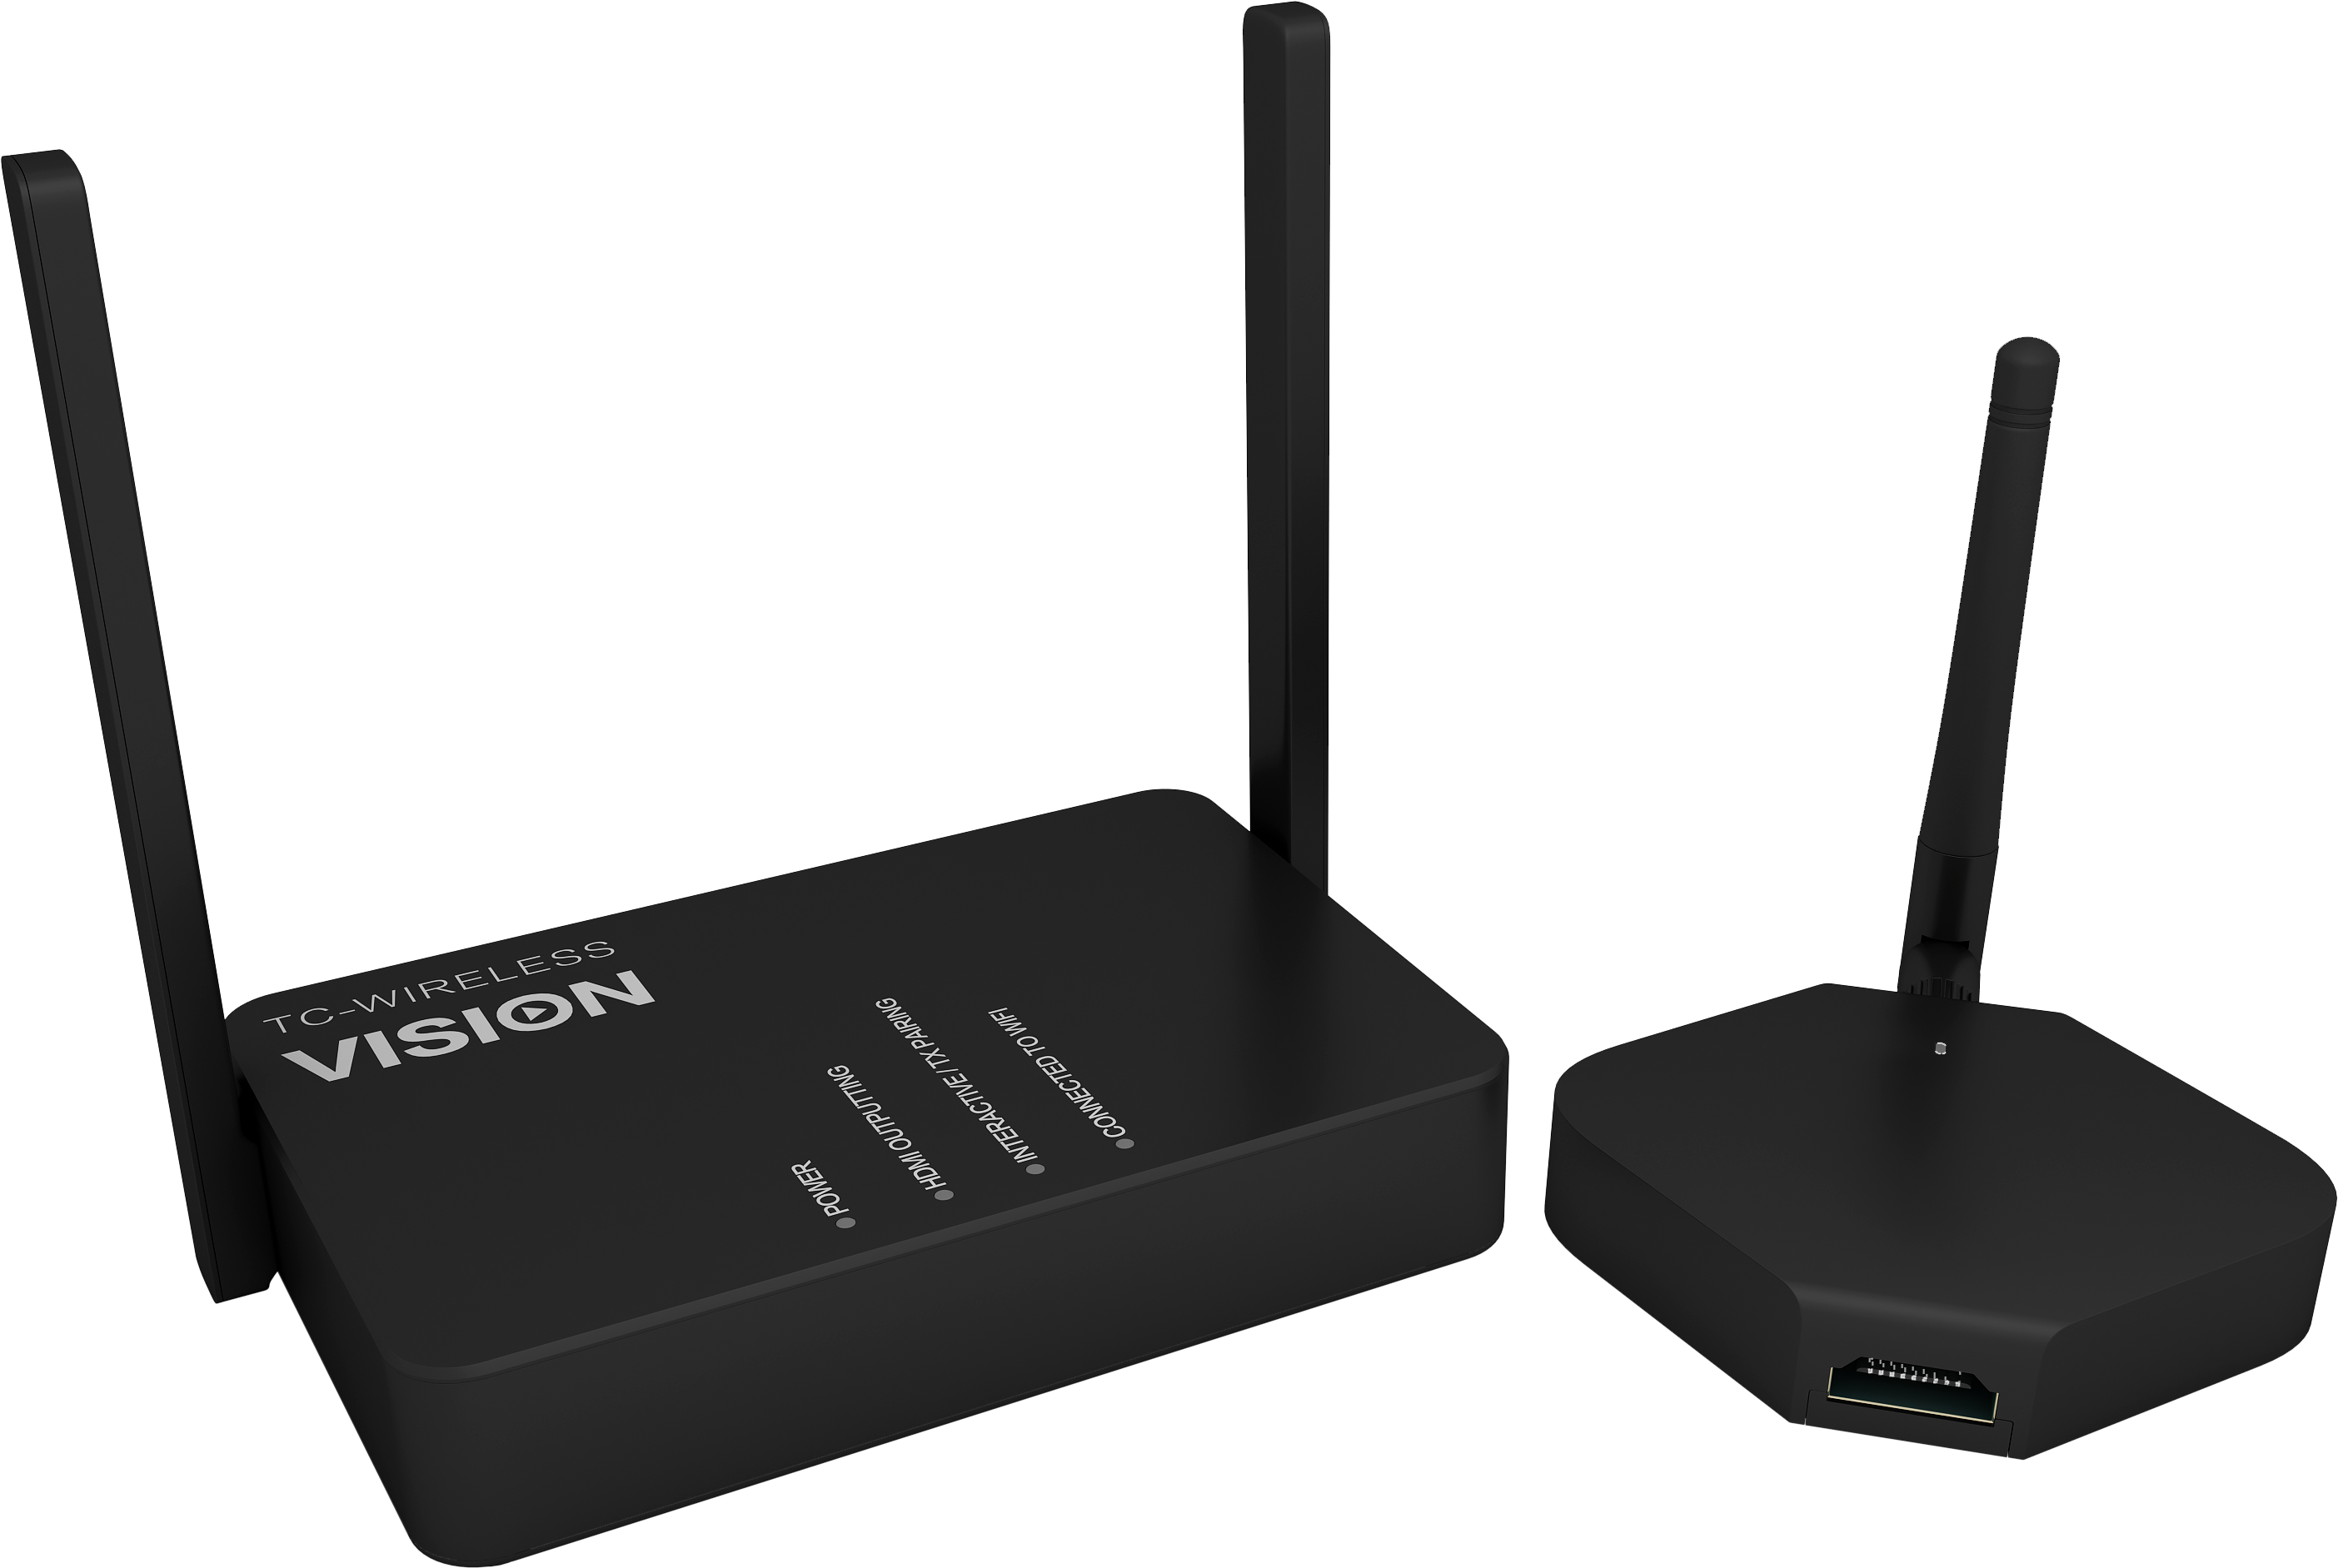 Vision primo sul mercato con HDMI e USB wireless.